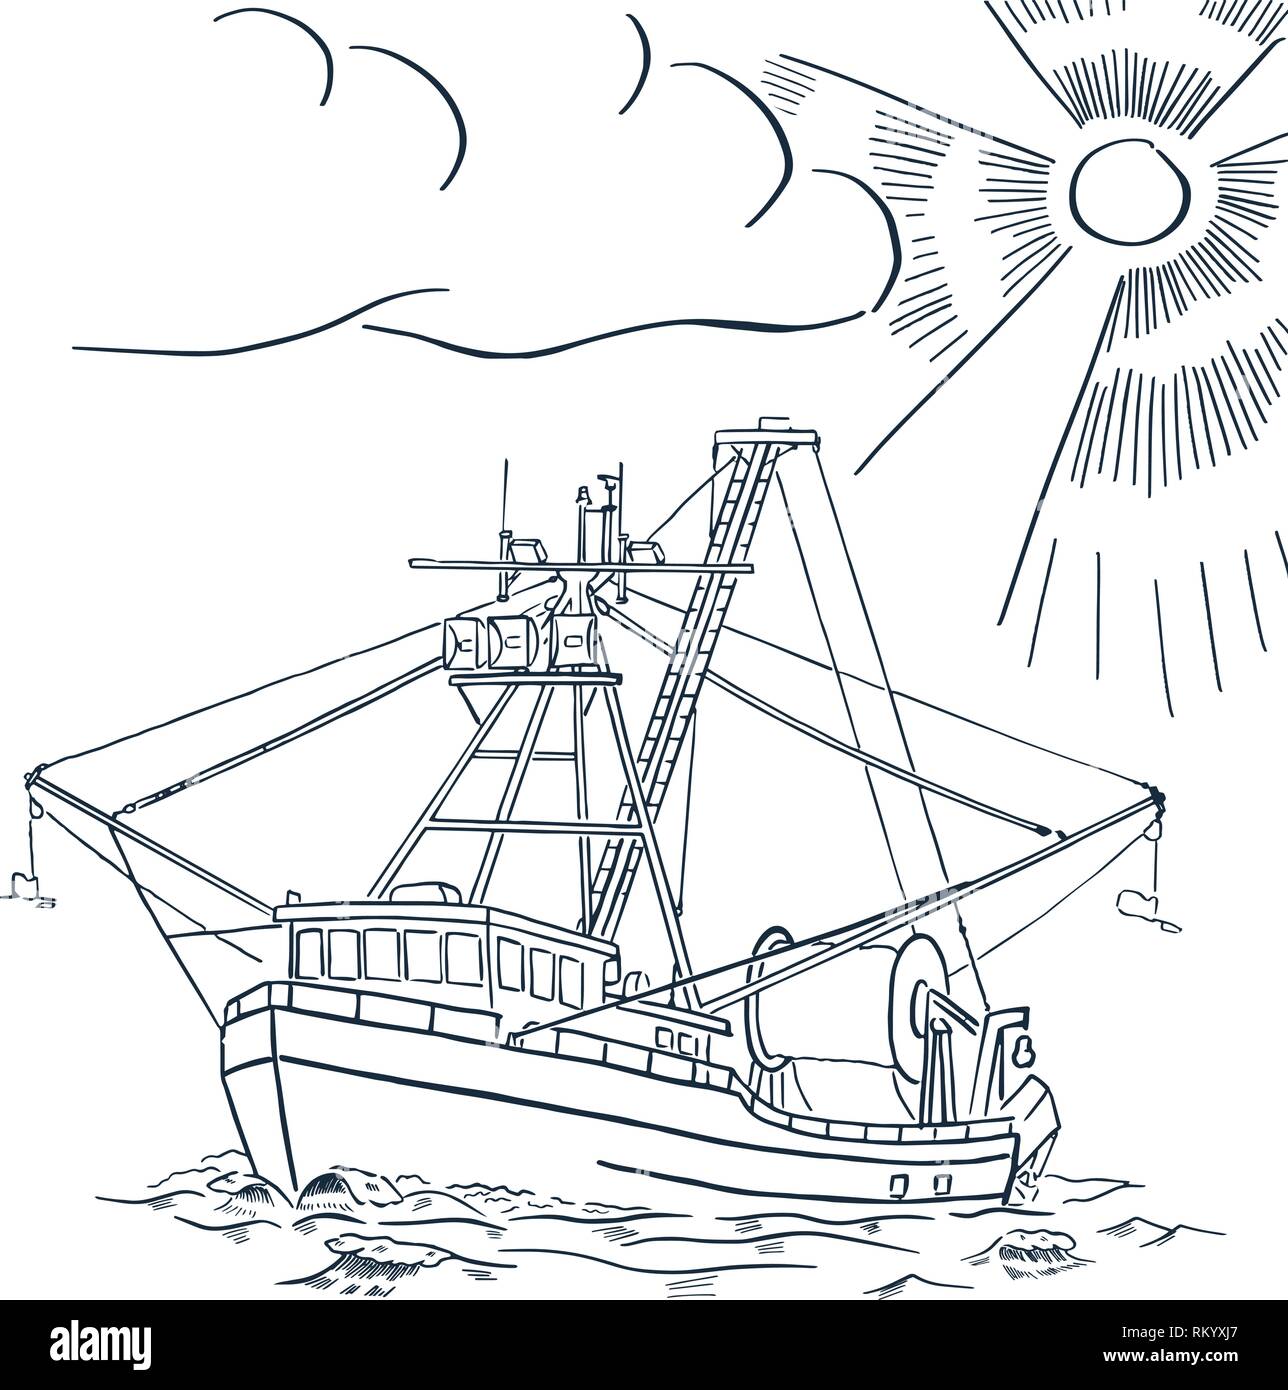 Fishing ship. Salmon fishing boat. Alaska. Vector illustration. Stock Vector